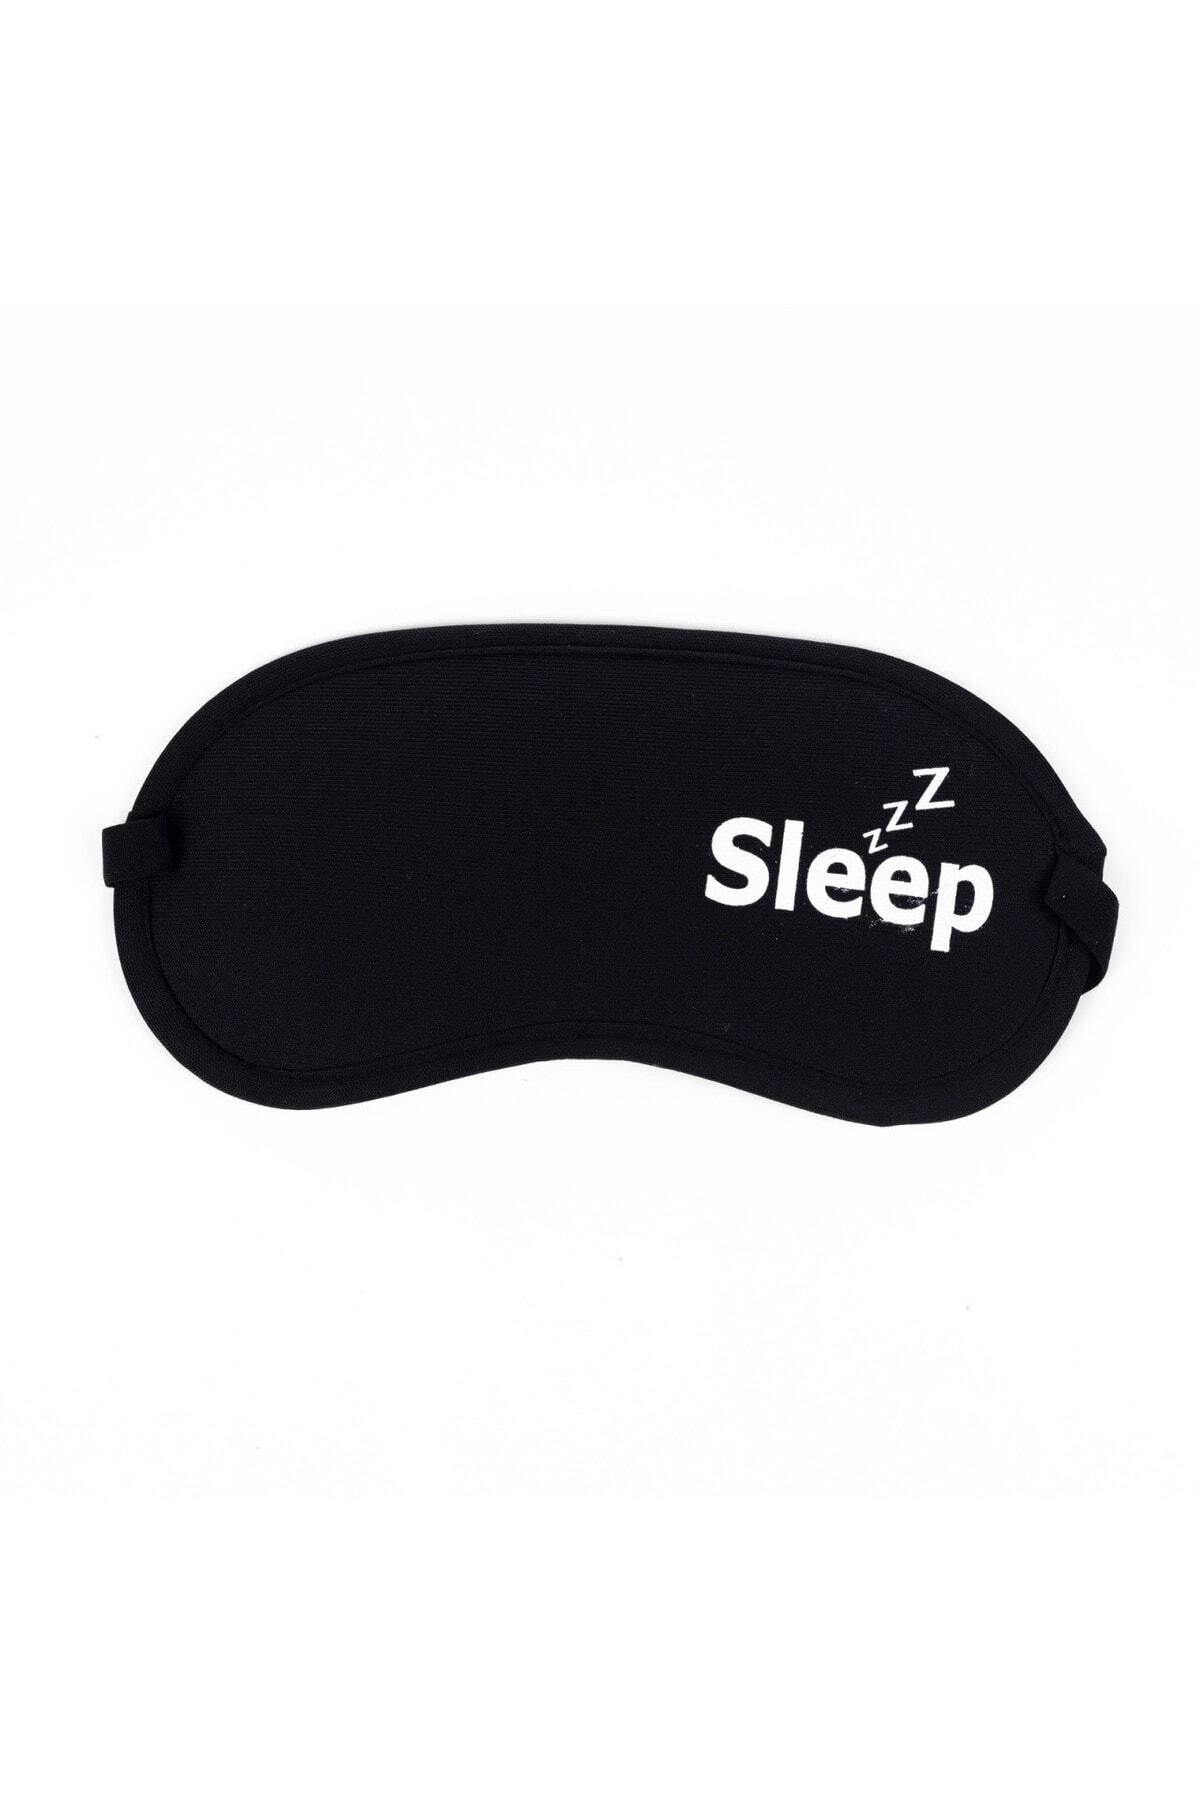 MAZEN Yıkanabilir Uyku Maskesi Göz Bandı Sleep